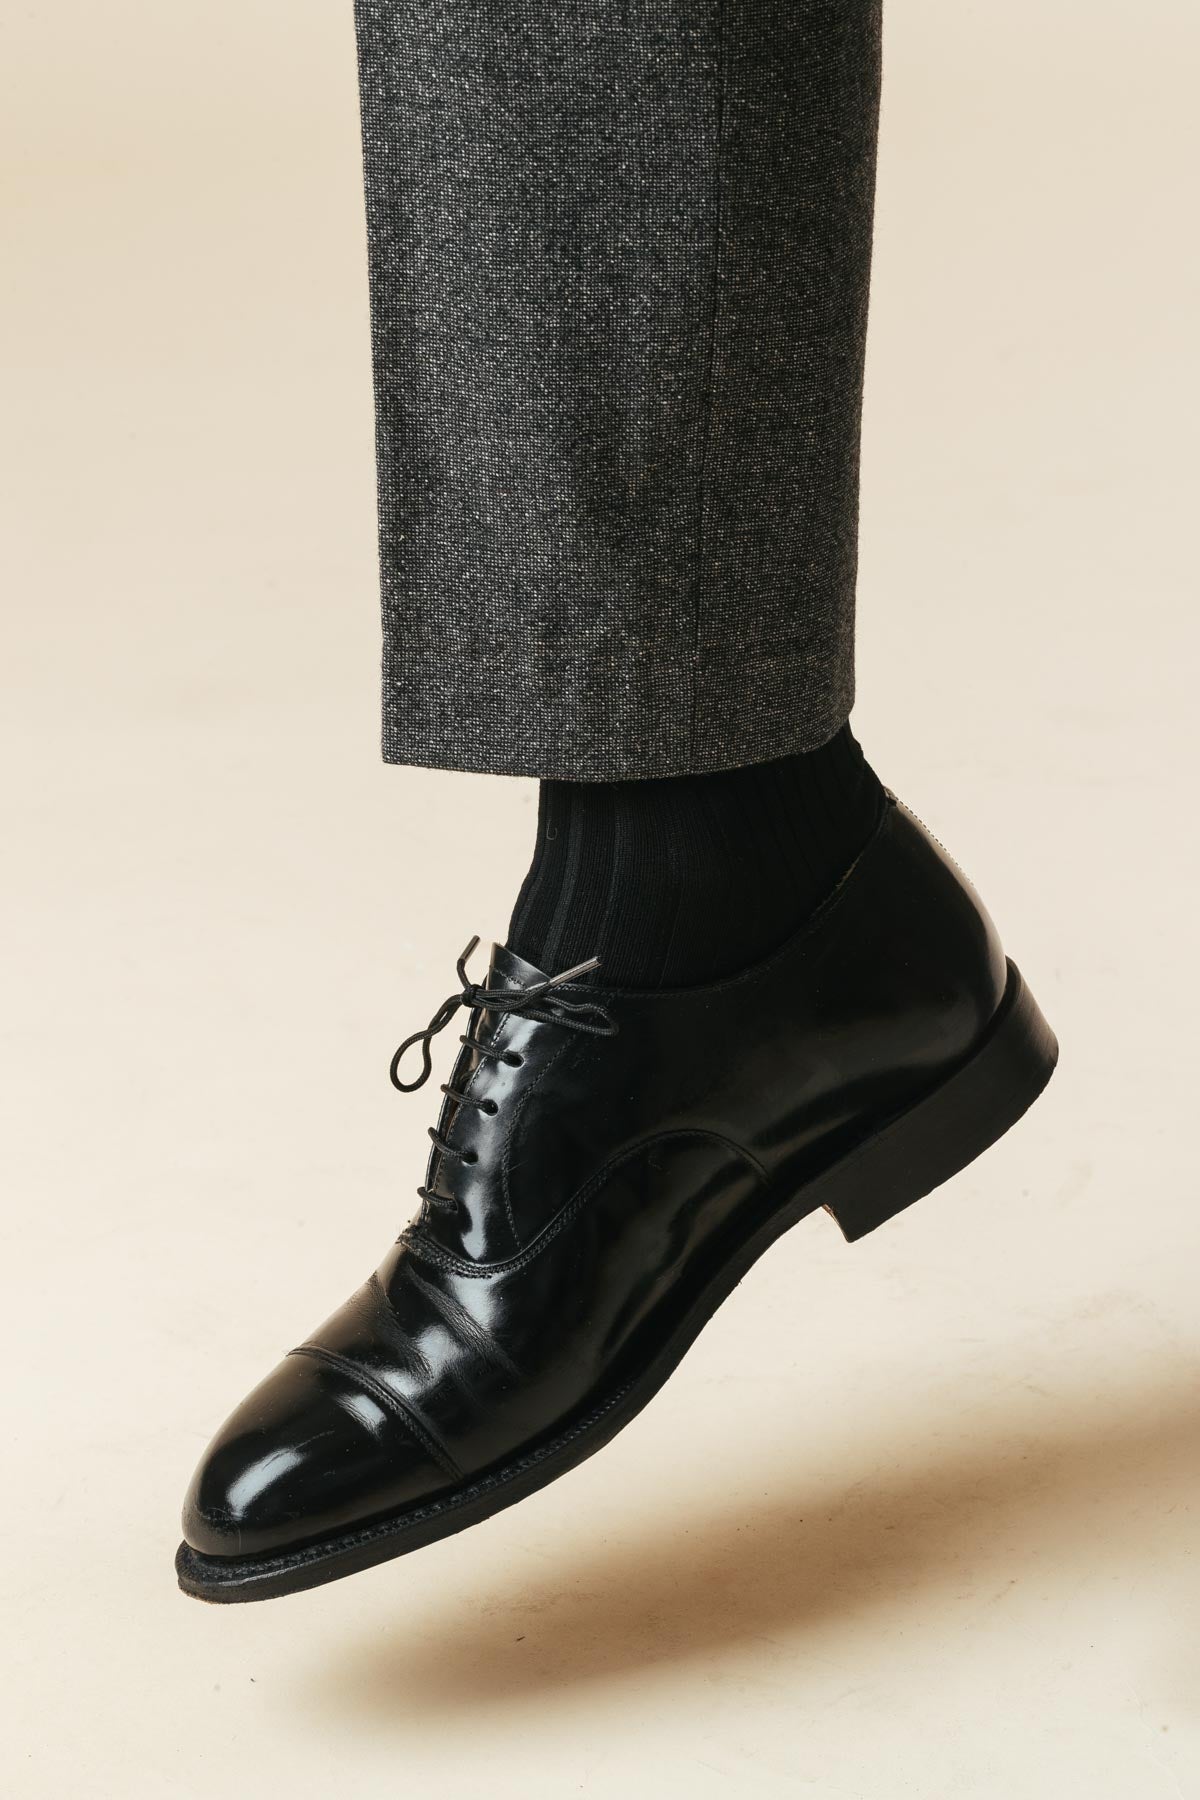 AN IVY Sokker Black Ribbed Socks